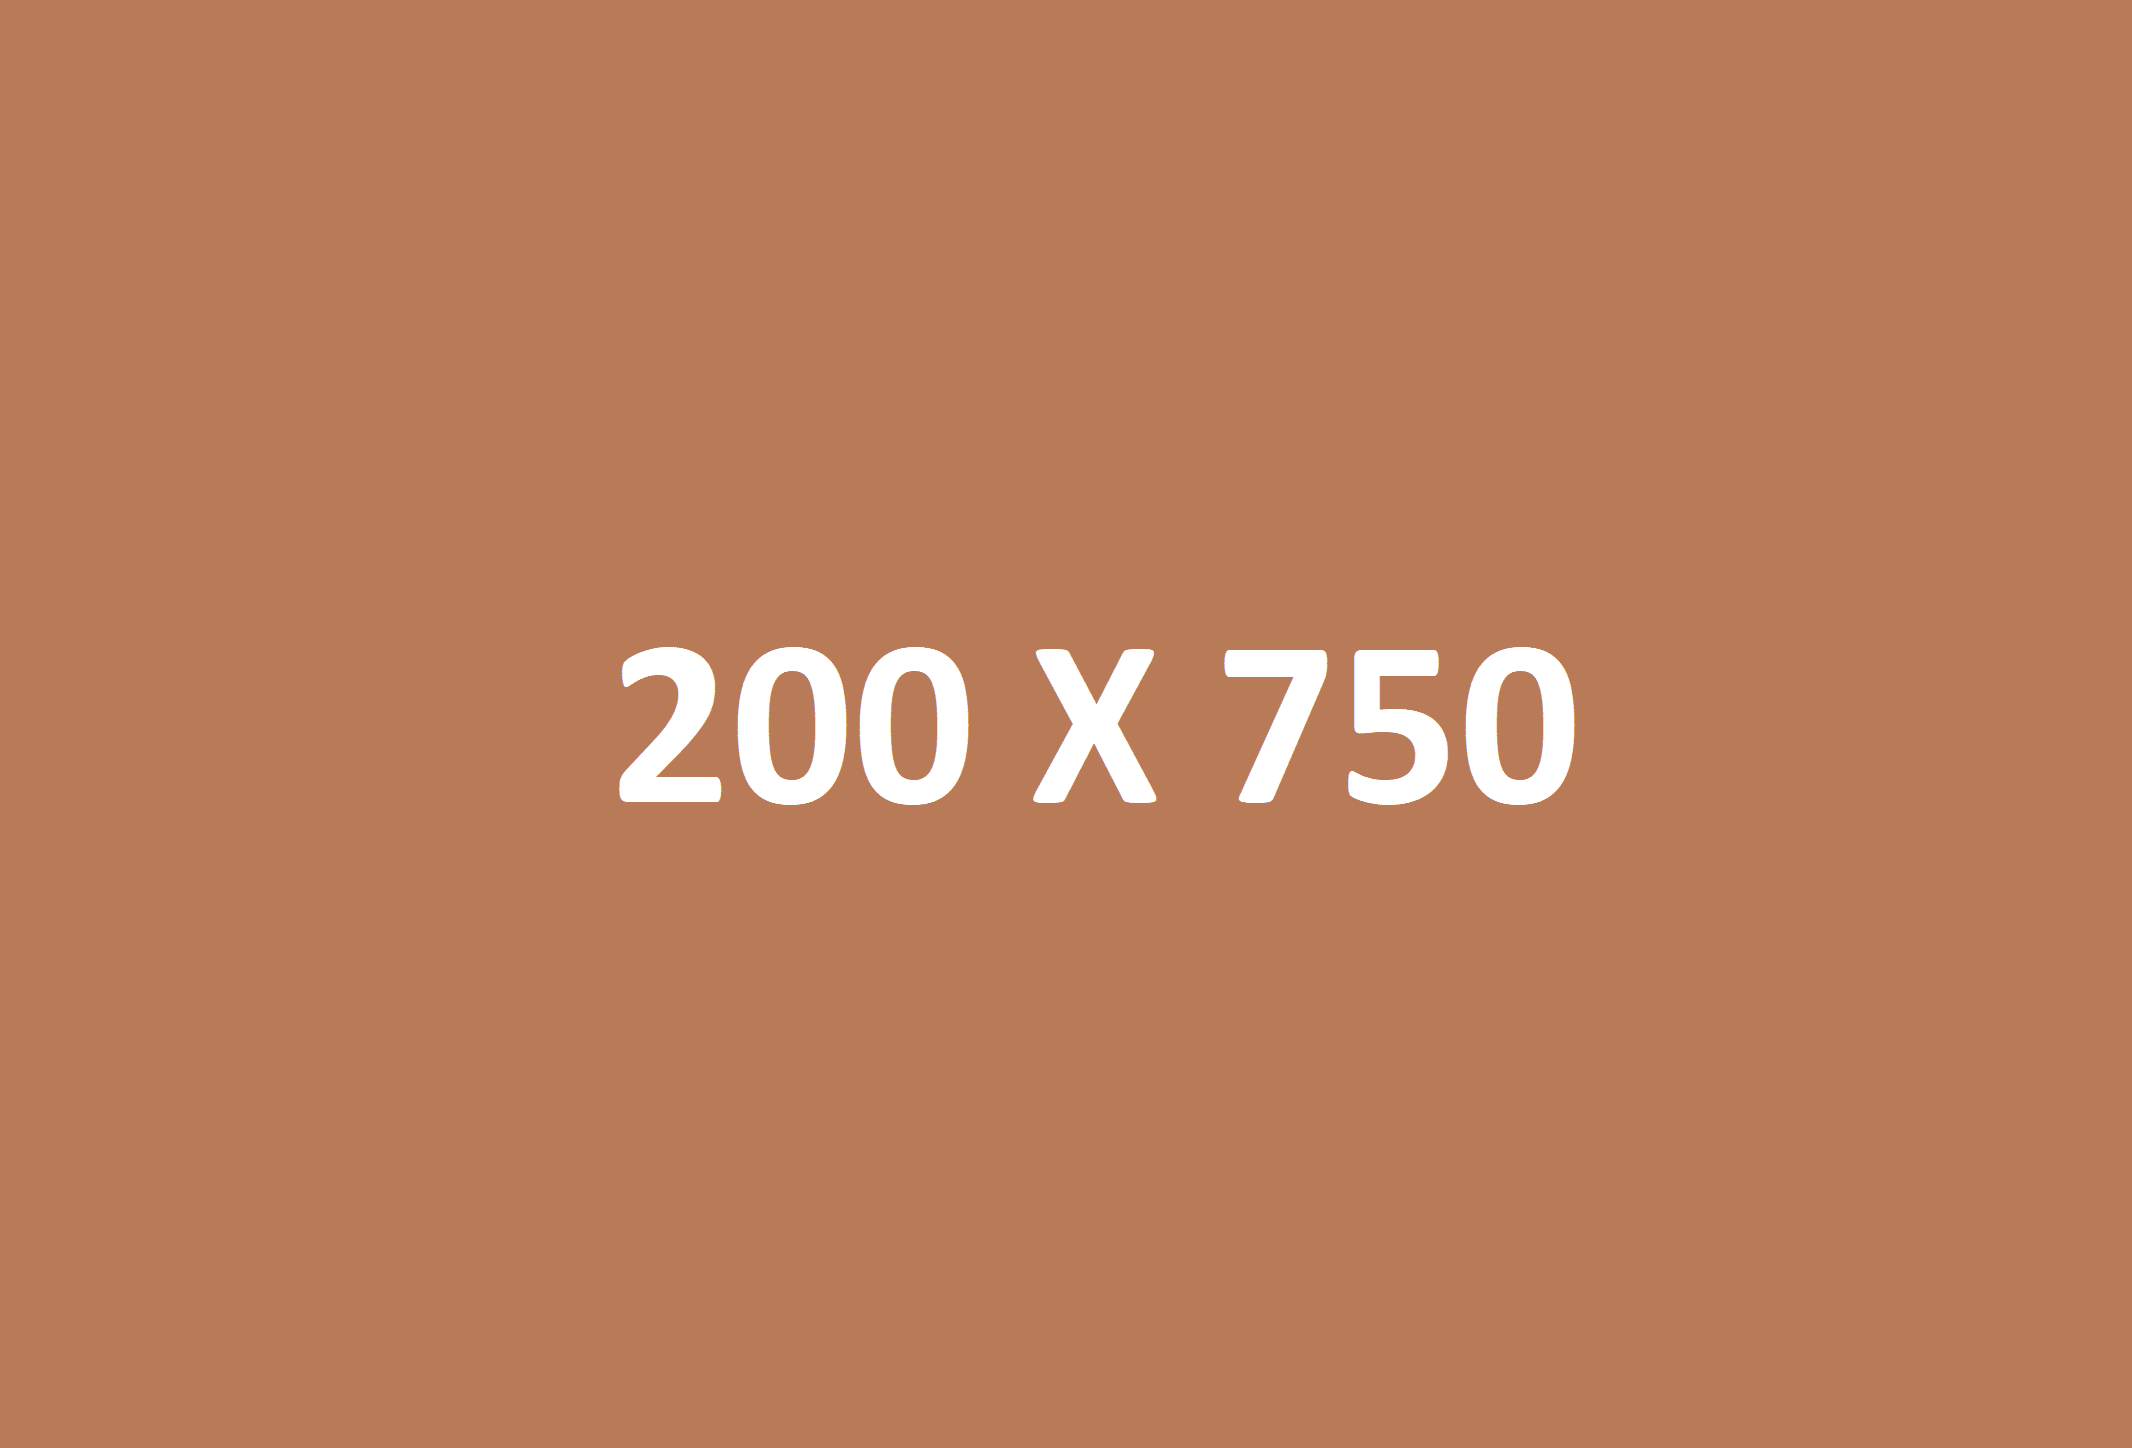 200 X 750